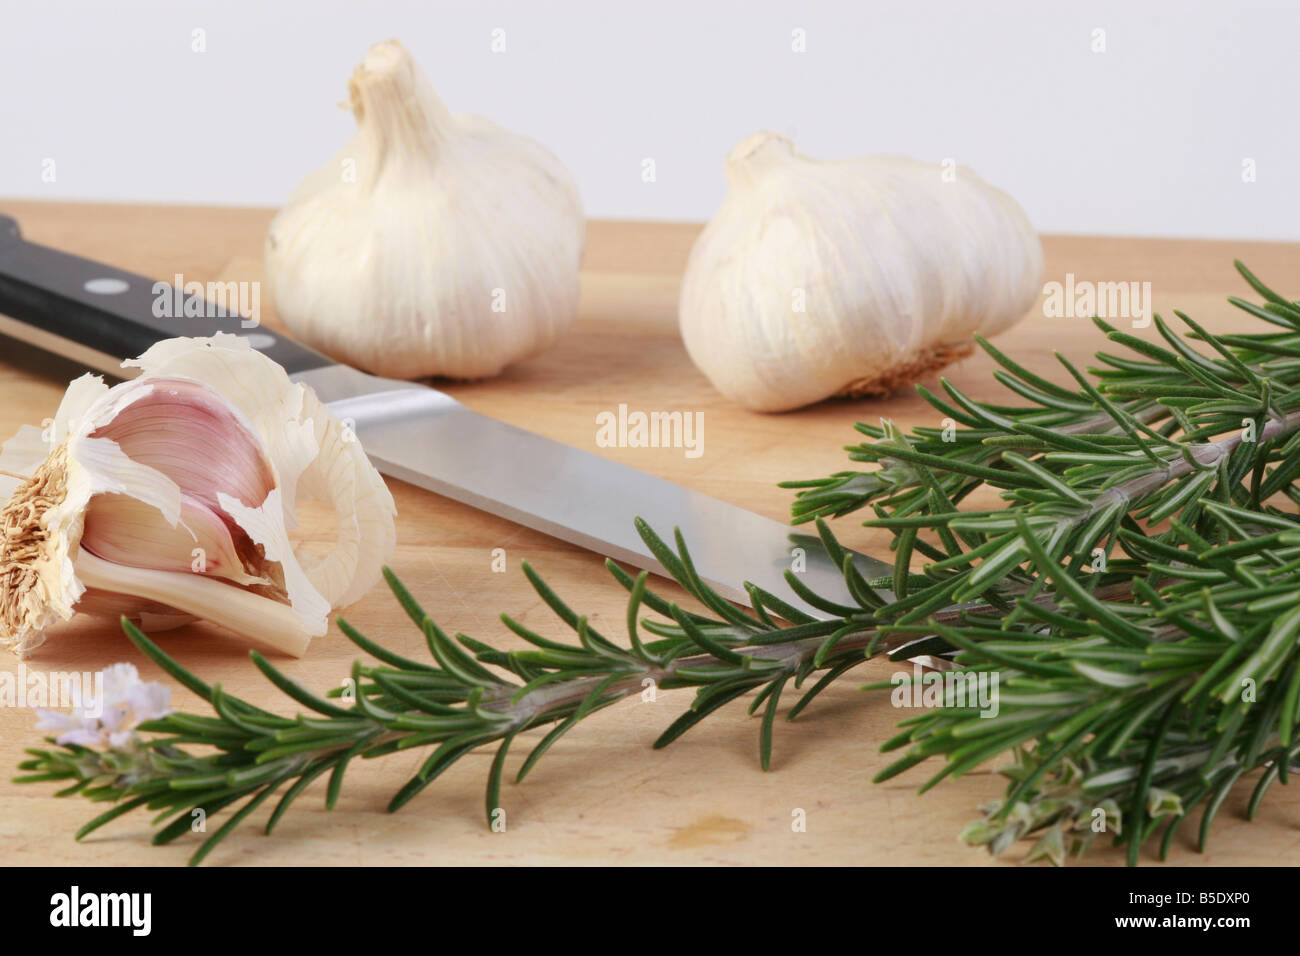 garlic rosemary knife Stock Photo